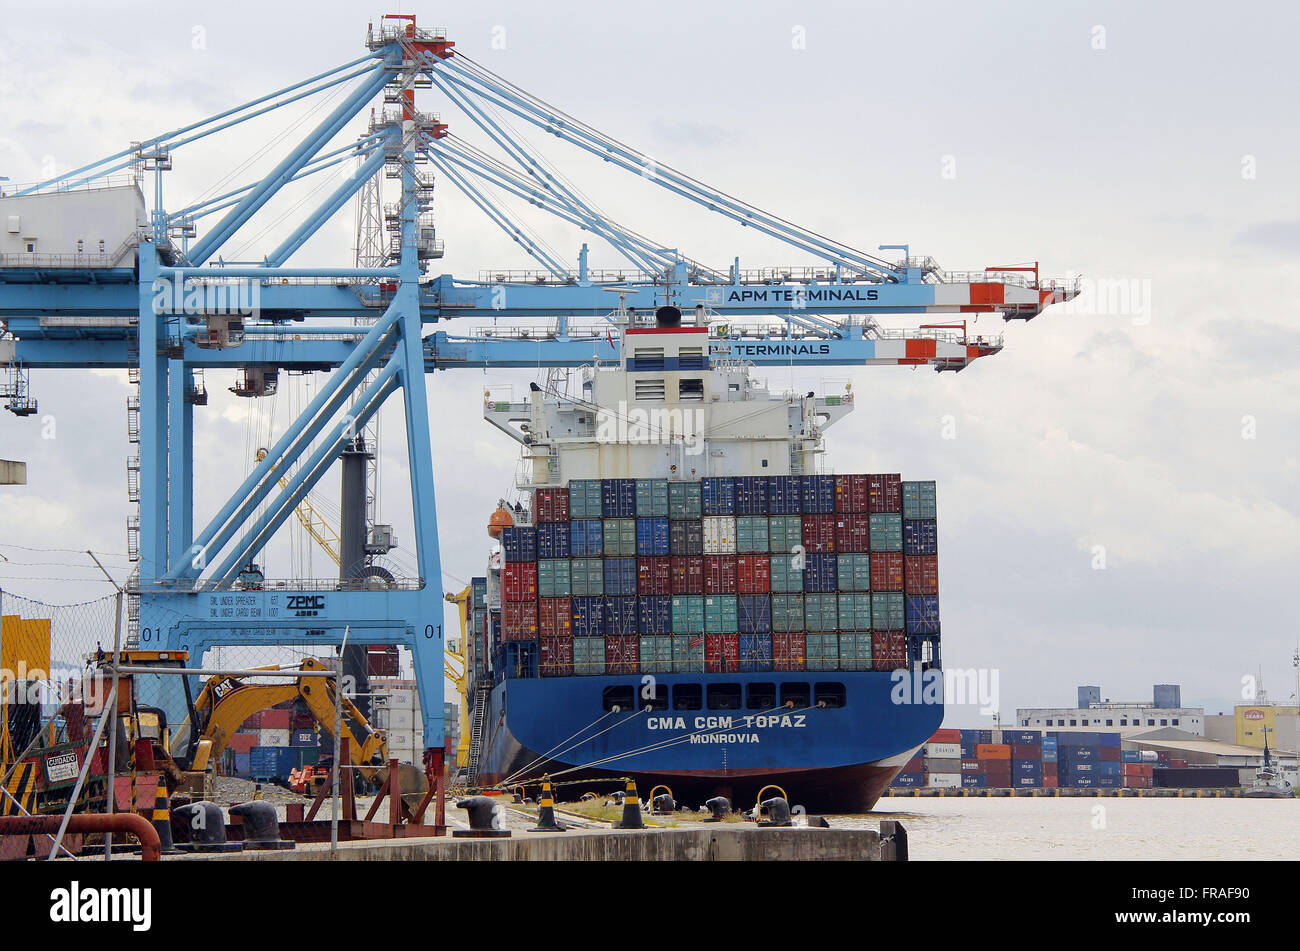 Liberianische Cargo Schiff - CMA CGM Topas, MONROVIA - wird beladen mit Containern im Hafen, die ich Stockfoto